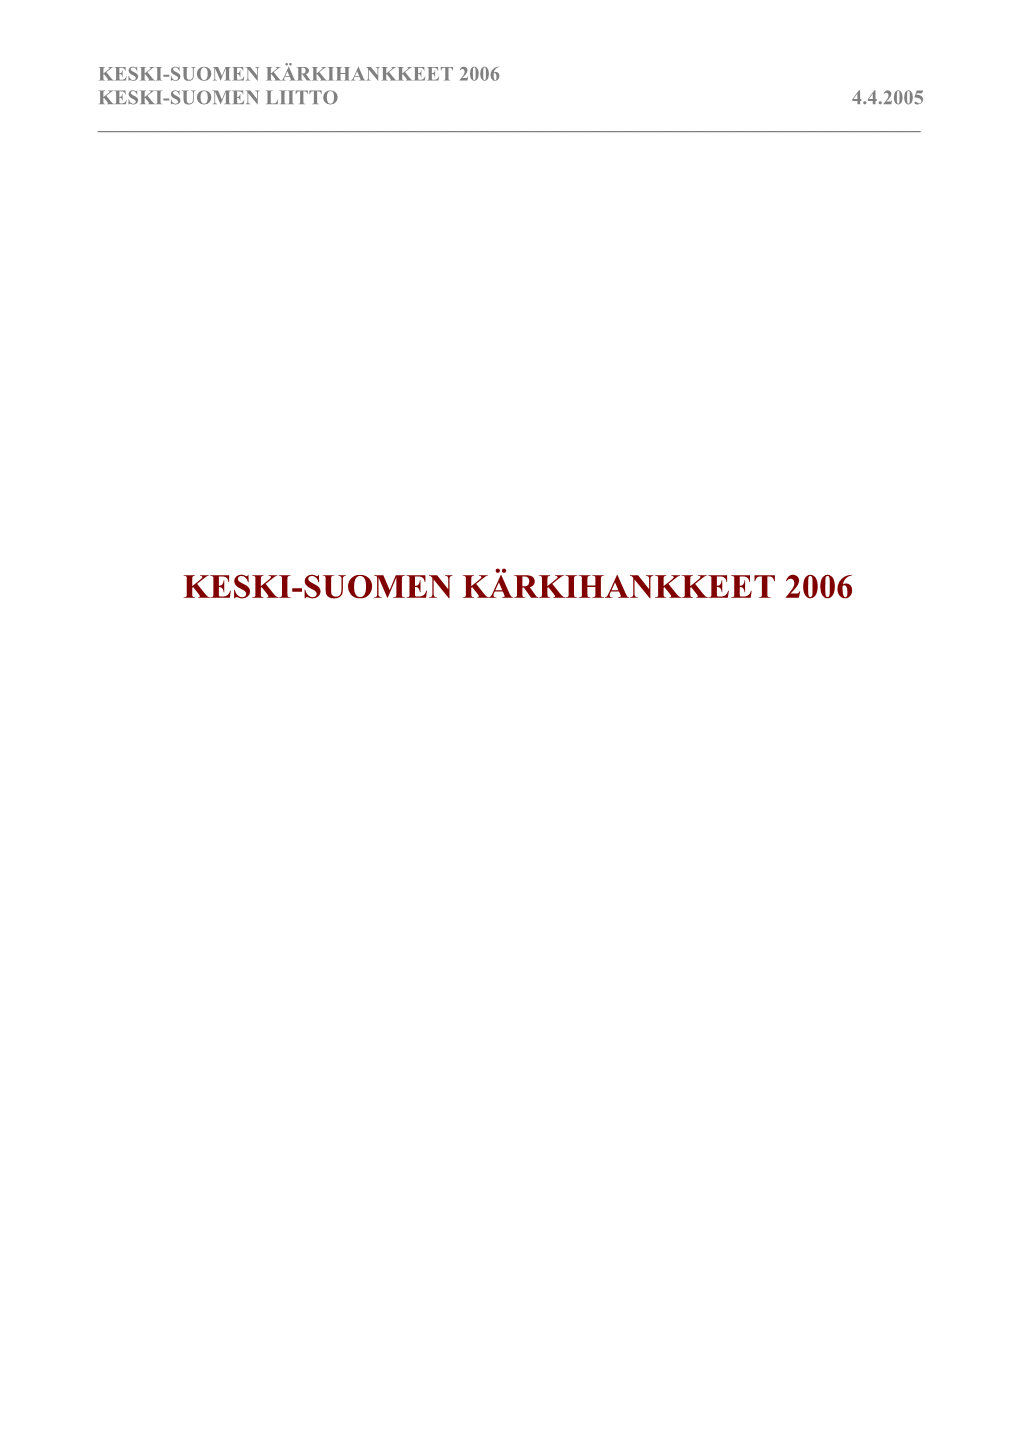 Keski-Suomen Kärkihankkeet 2006 Keski-Suomen Liitto 4.4.2005 ______